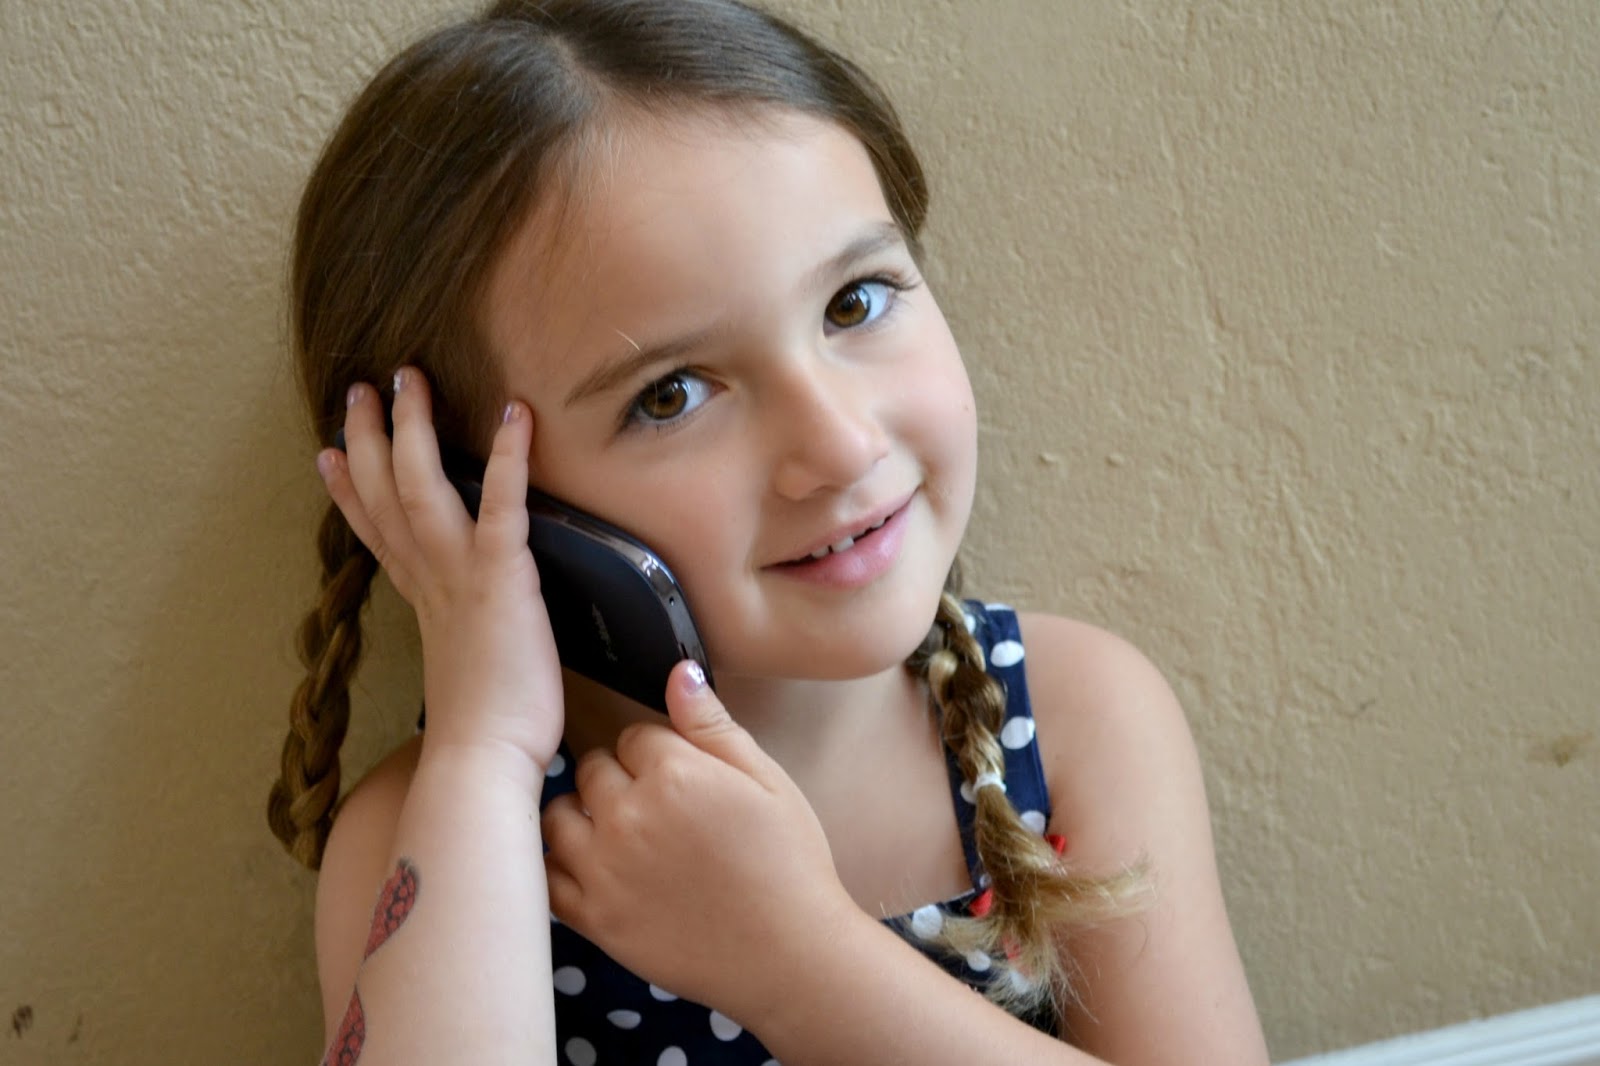 Μελέτη για την επίδραση των κινητών τηλεφώνων στον παιδικό εγκέφαλο